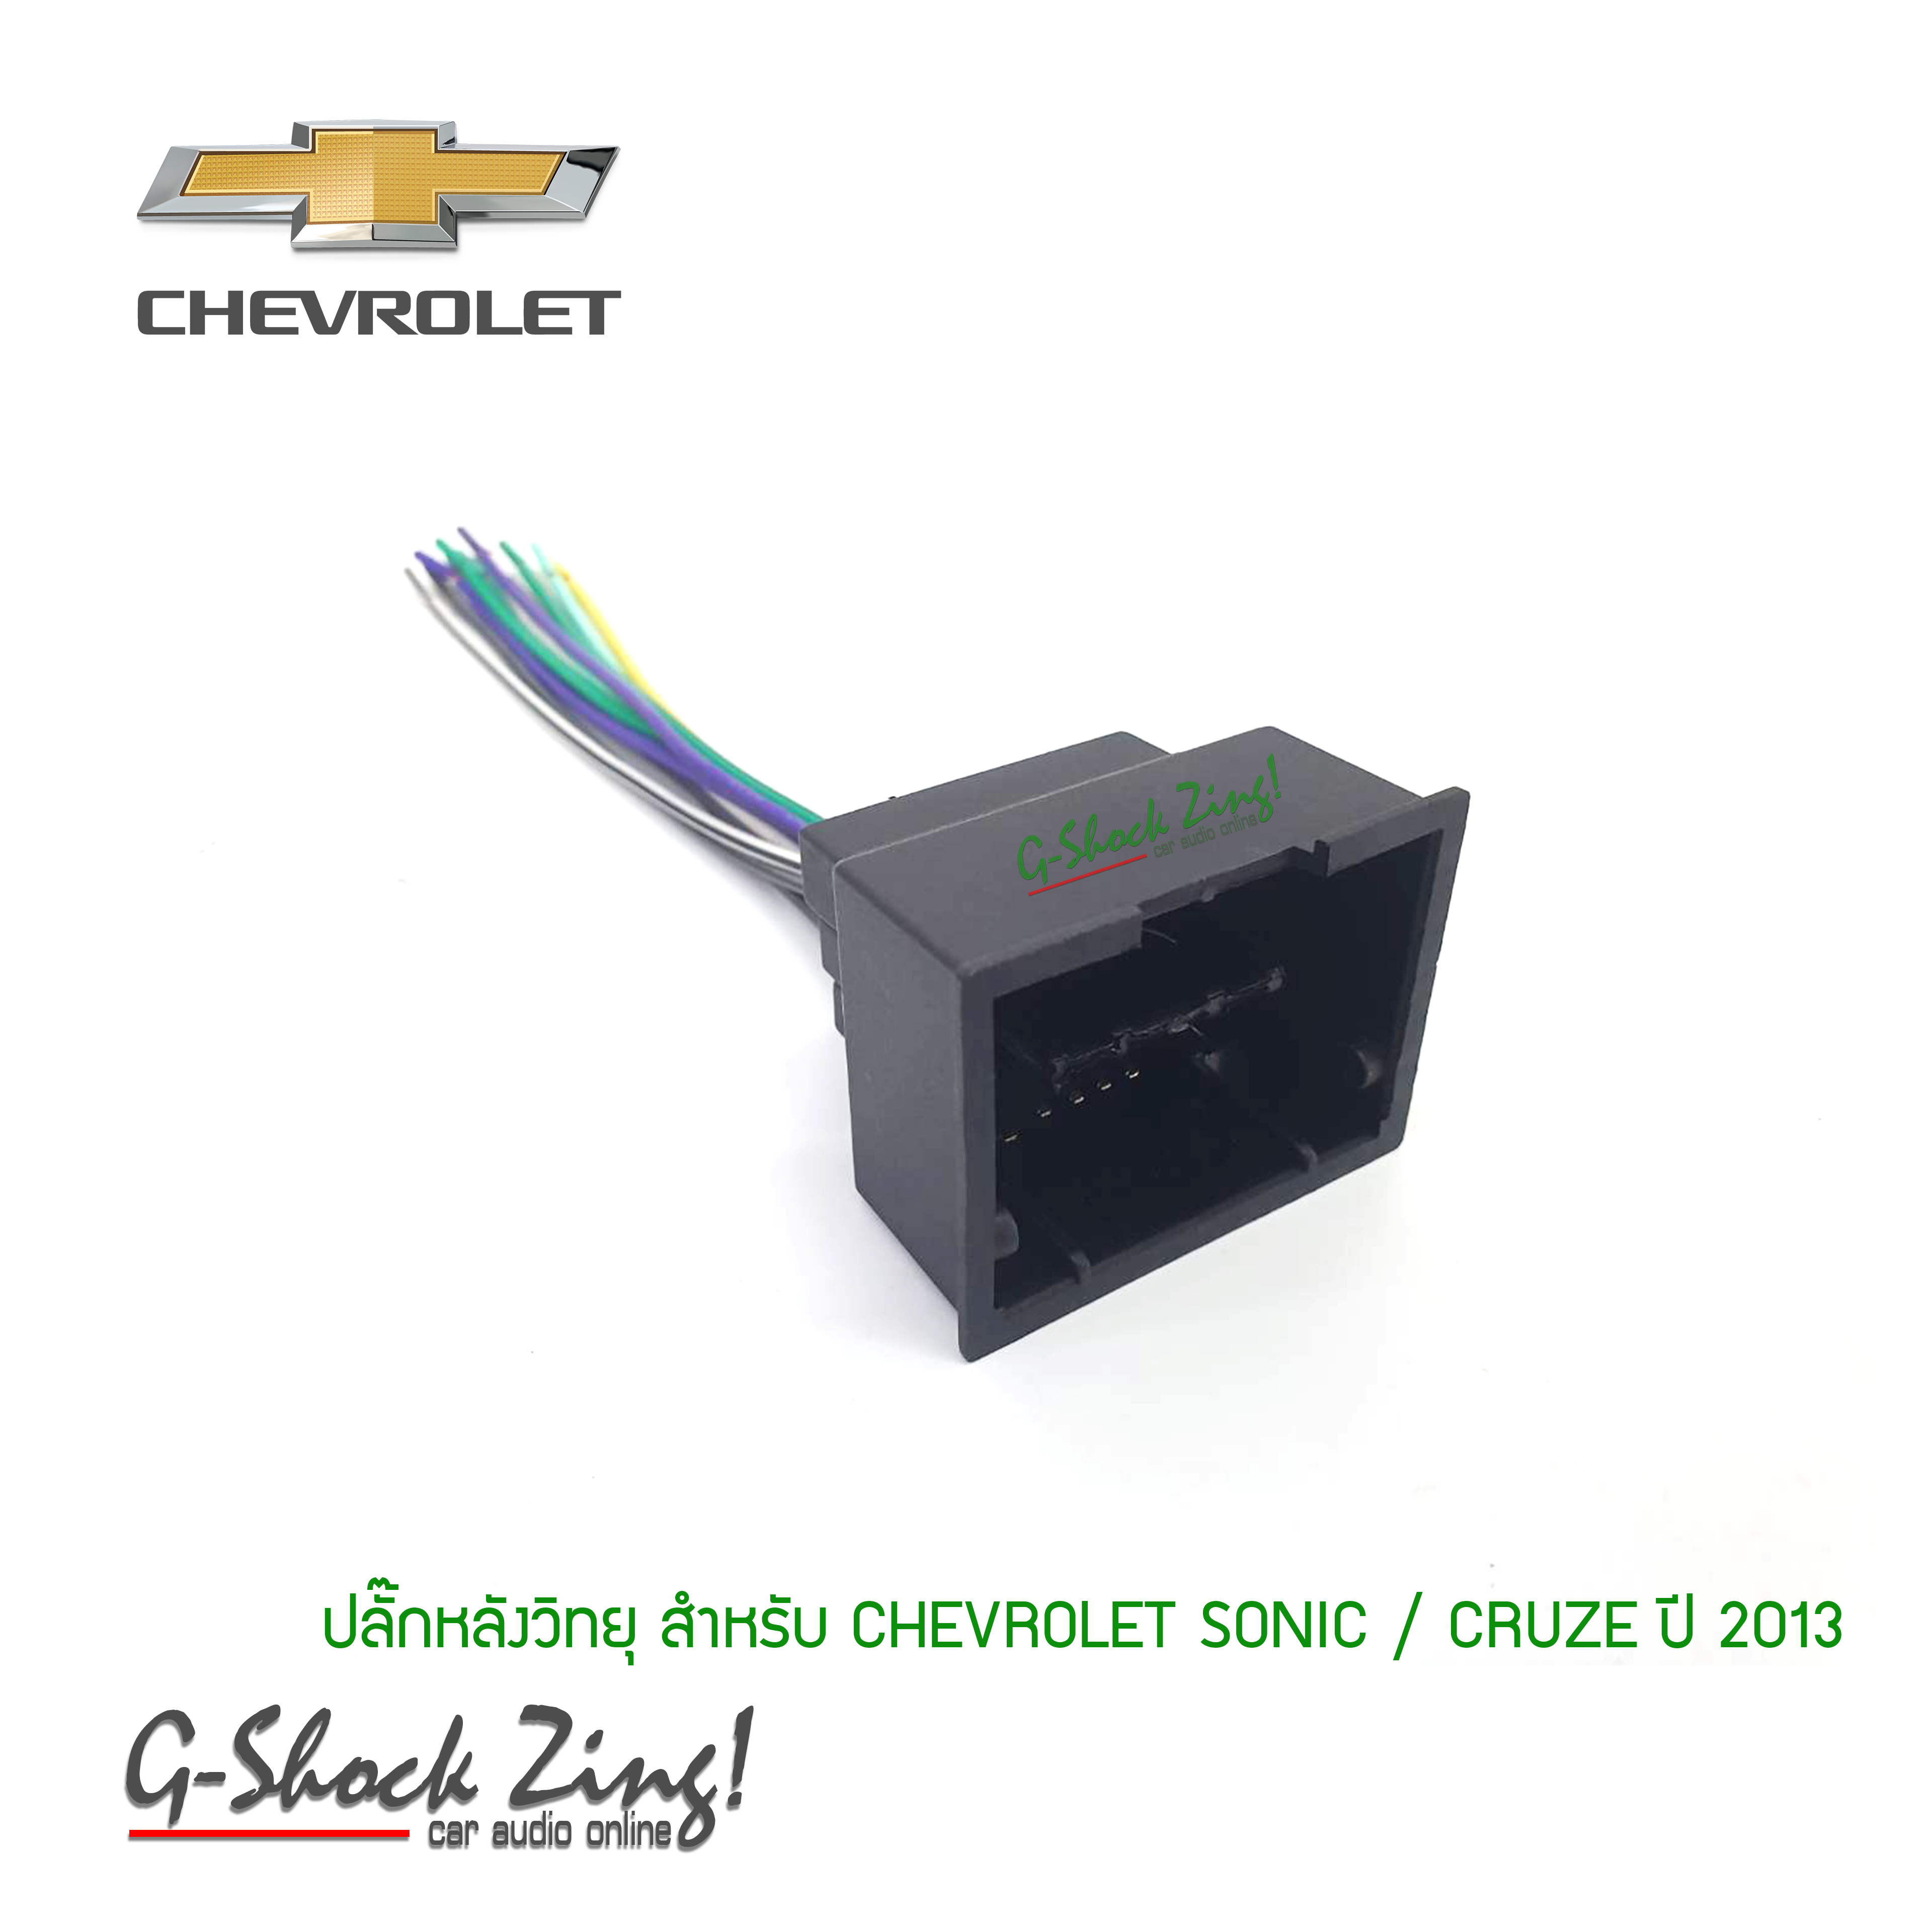 เครื่องเสียงรถยนต์/ปลัํกหลังวิทยุ ตรงรุ่น สำหรับวิทยุใหม่ สำหรับ เชฟโรเลต โซนิค-ครูซ Chevrolet Sonic-Cruze ปี 2013